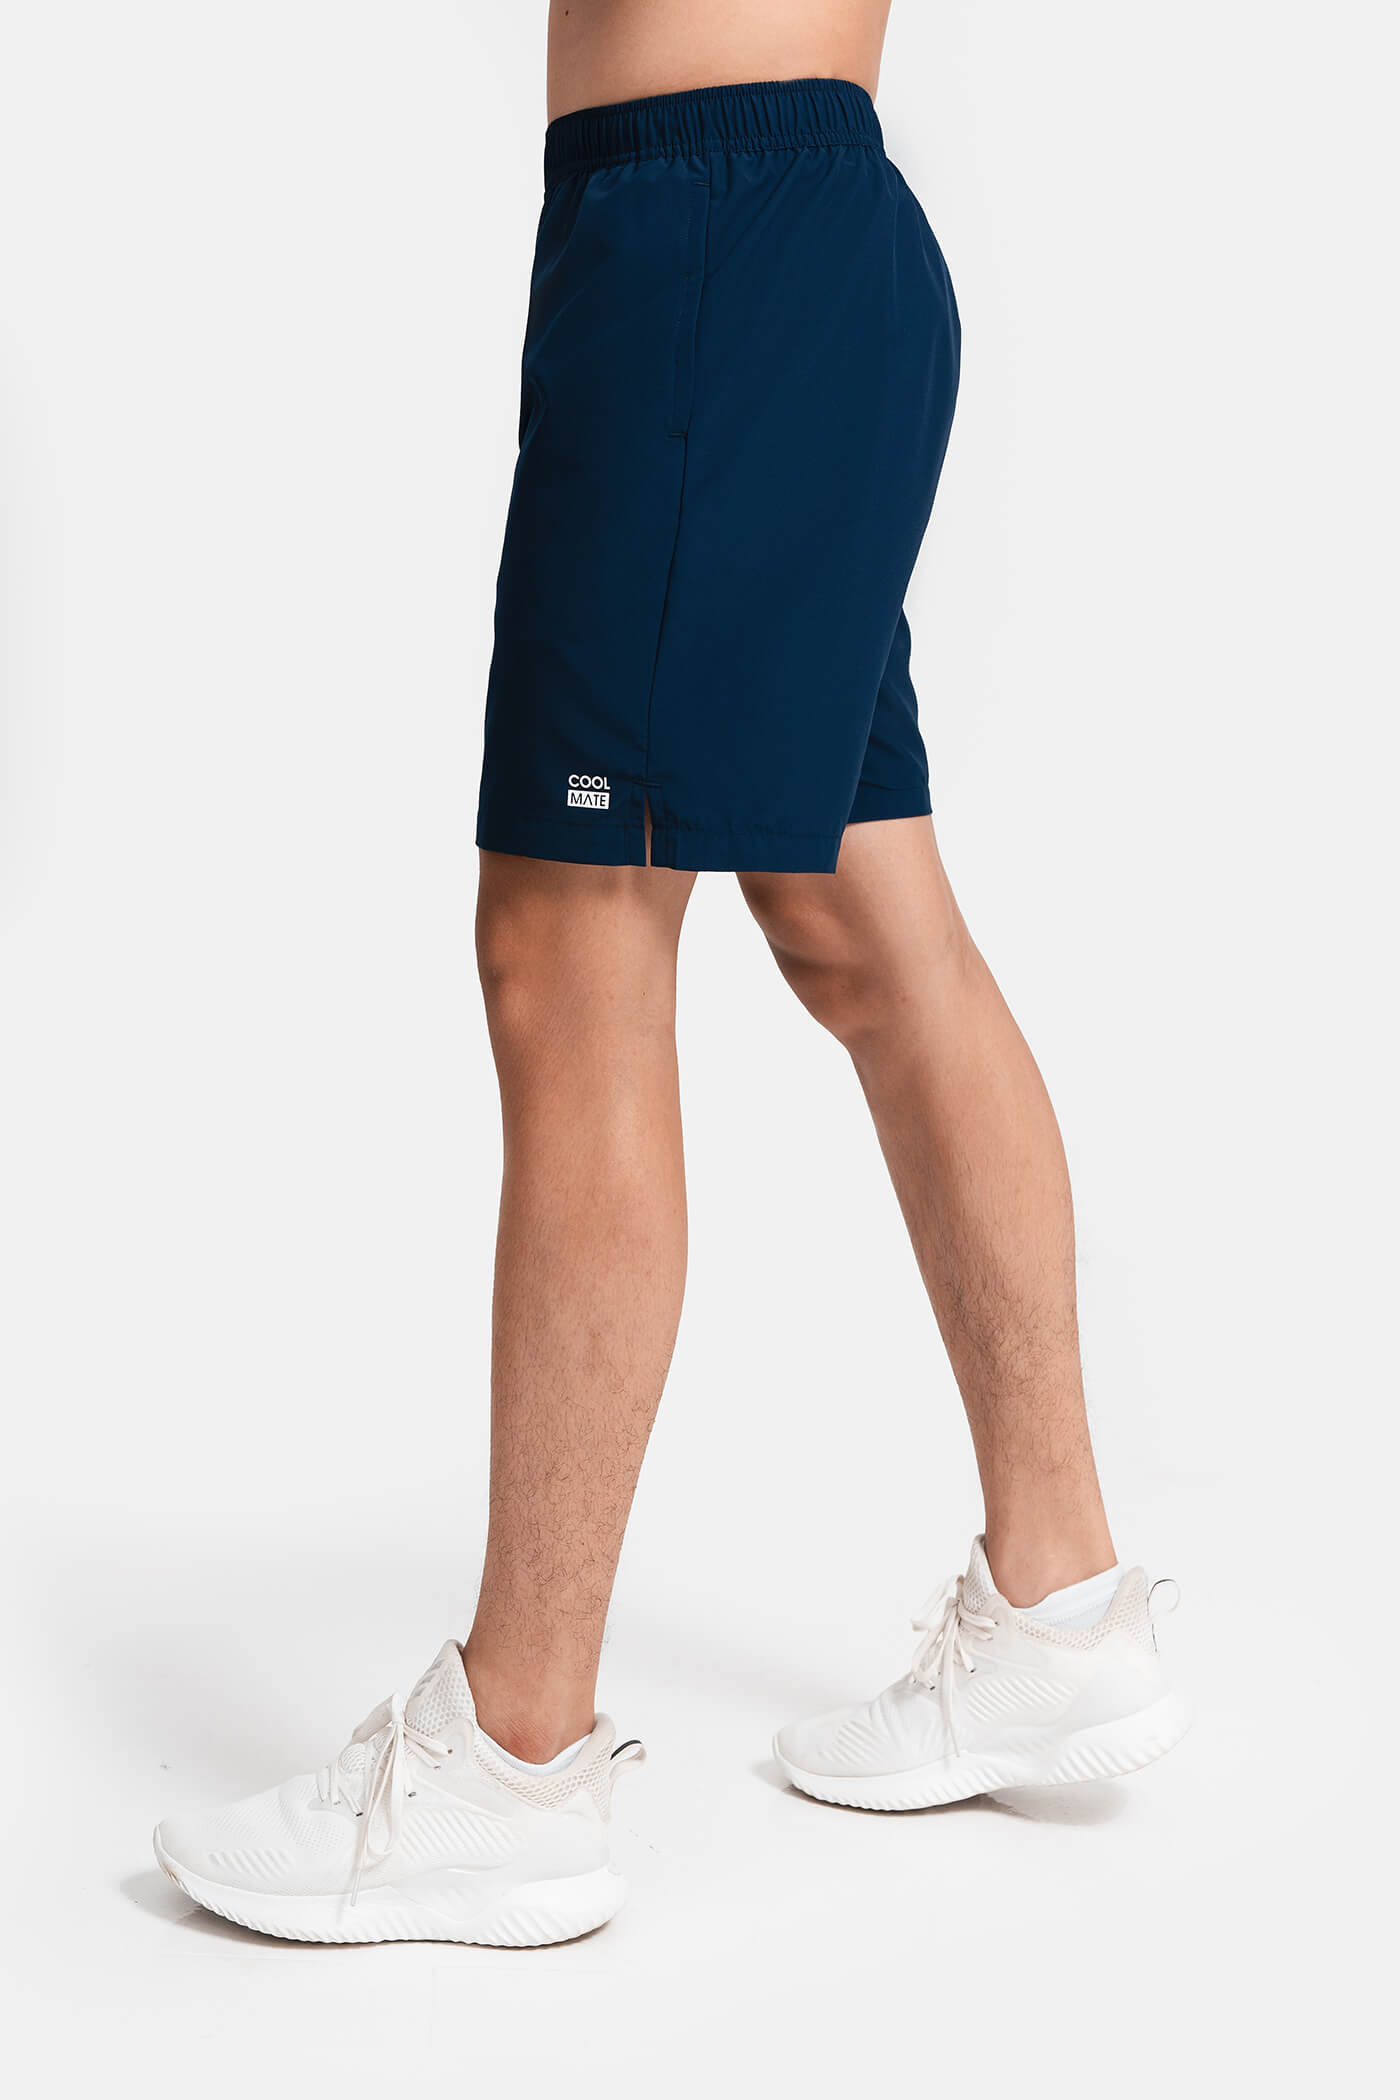 DEAL HOT - Quần shorts nam thể thao Recycle 7" V2 (túi sau có khóa kéo) Xanh navy 2